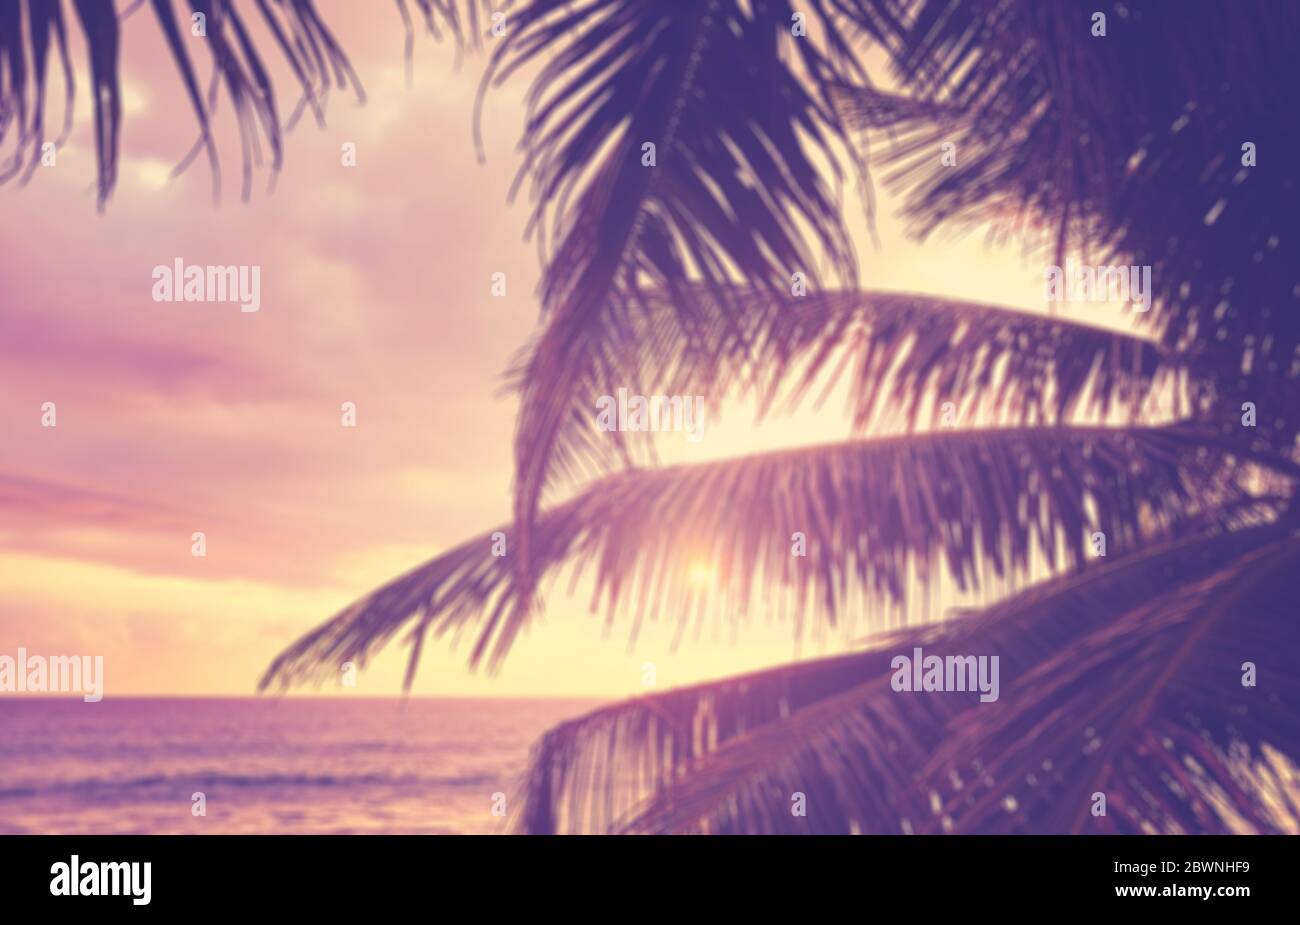 Verschwommene Kokosnusspalme Blätter Silhouetten bei Sonnenuntergang, Sommerurlaub Hintergrund, Farbtonierung angewendet. Stockfoto